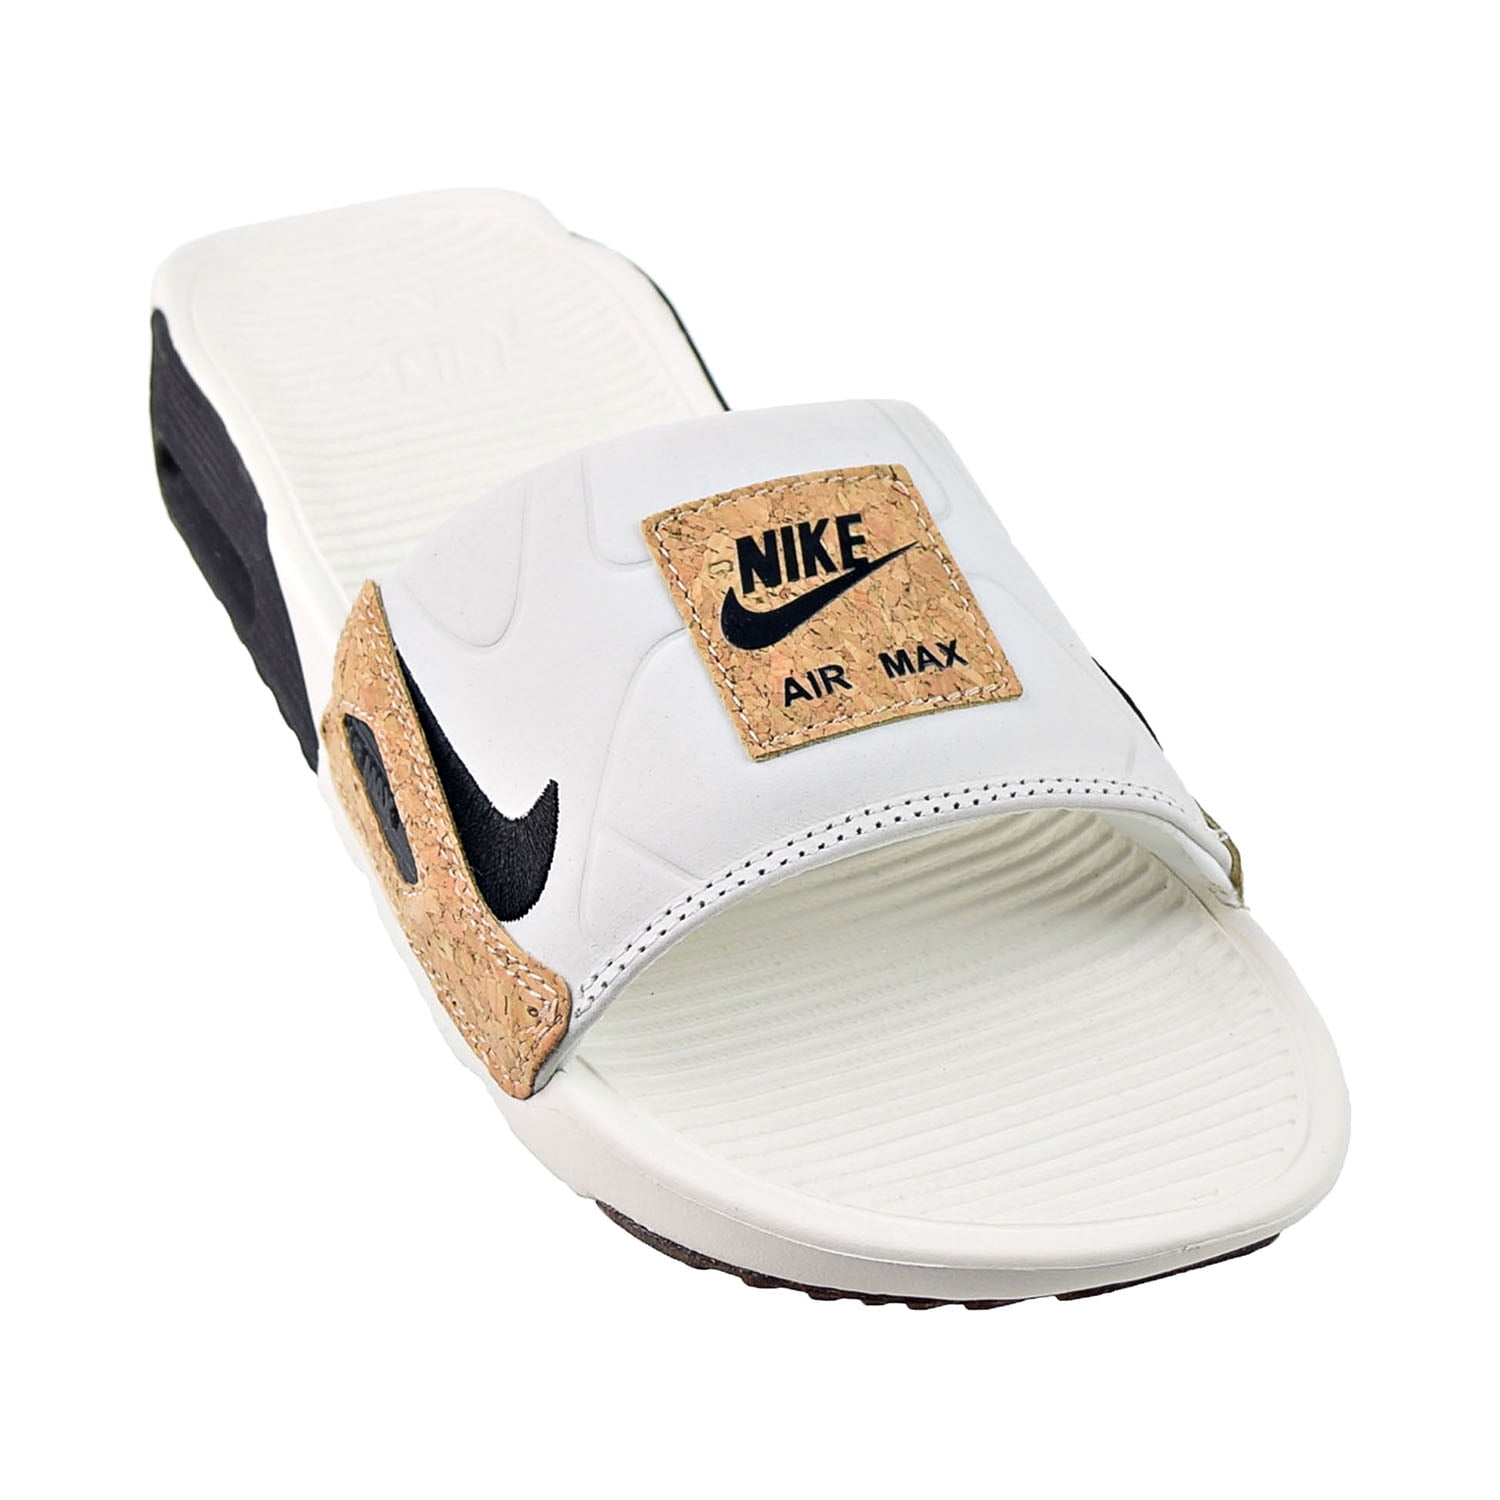 Nike Air Max Men's Slides Sail-Black Gum Yellow bq4635-103 -